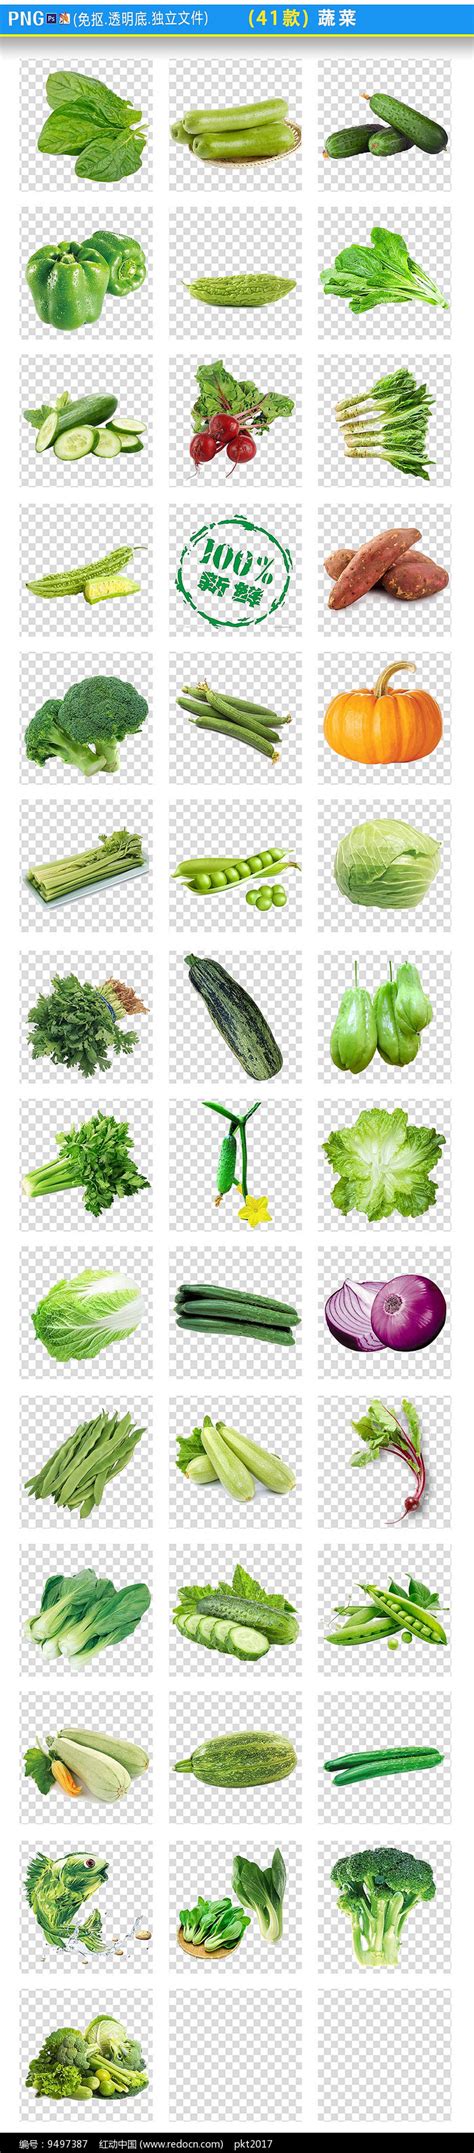 求带名称的蔬菜菜谱